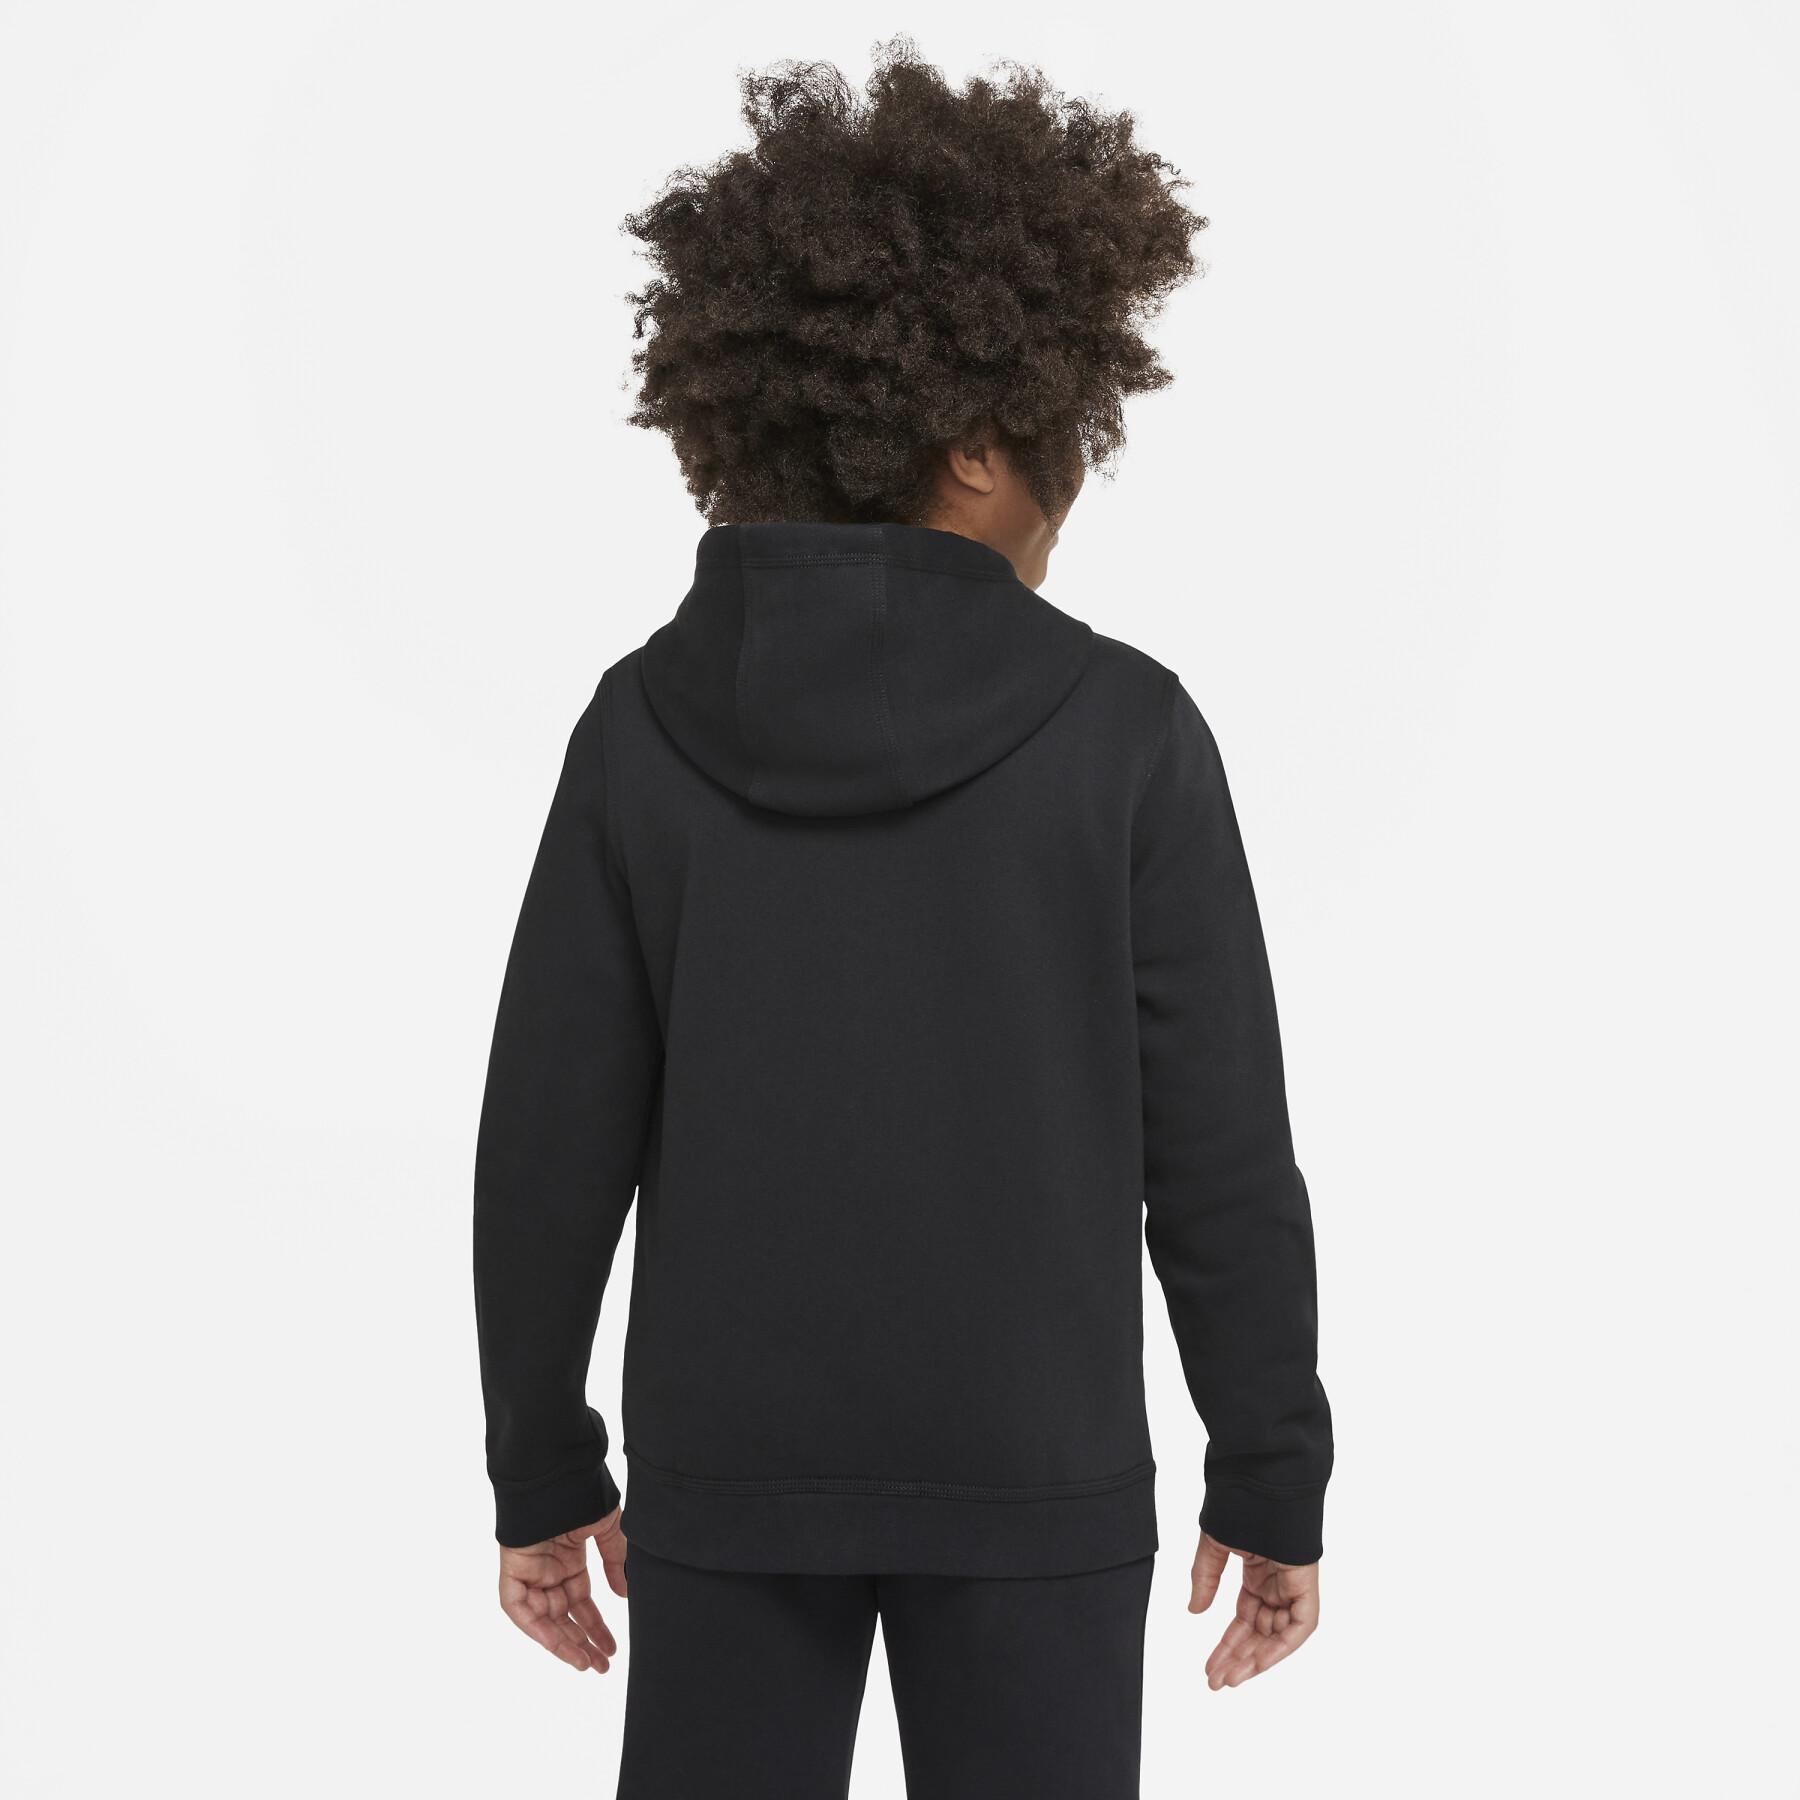 Child hoodie Nike Club